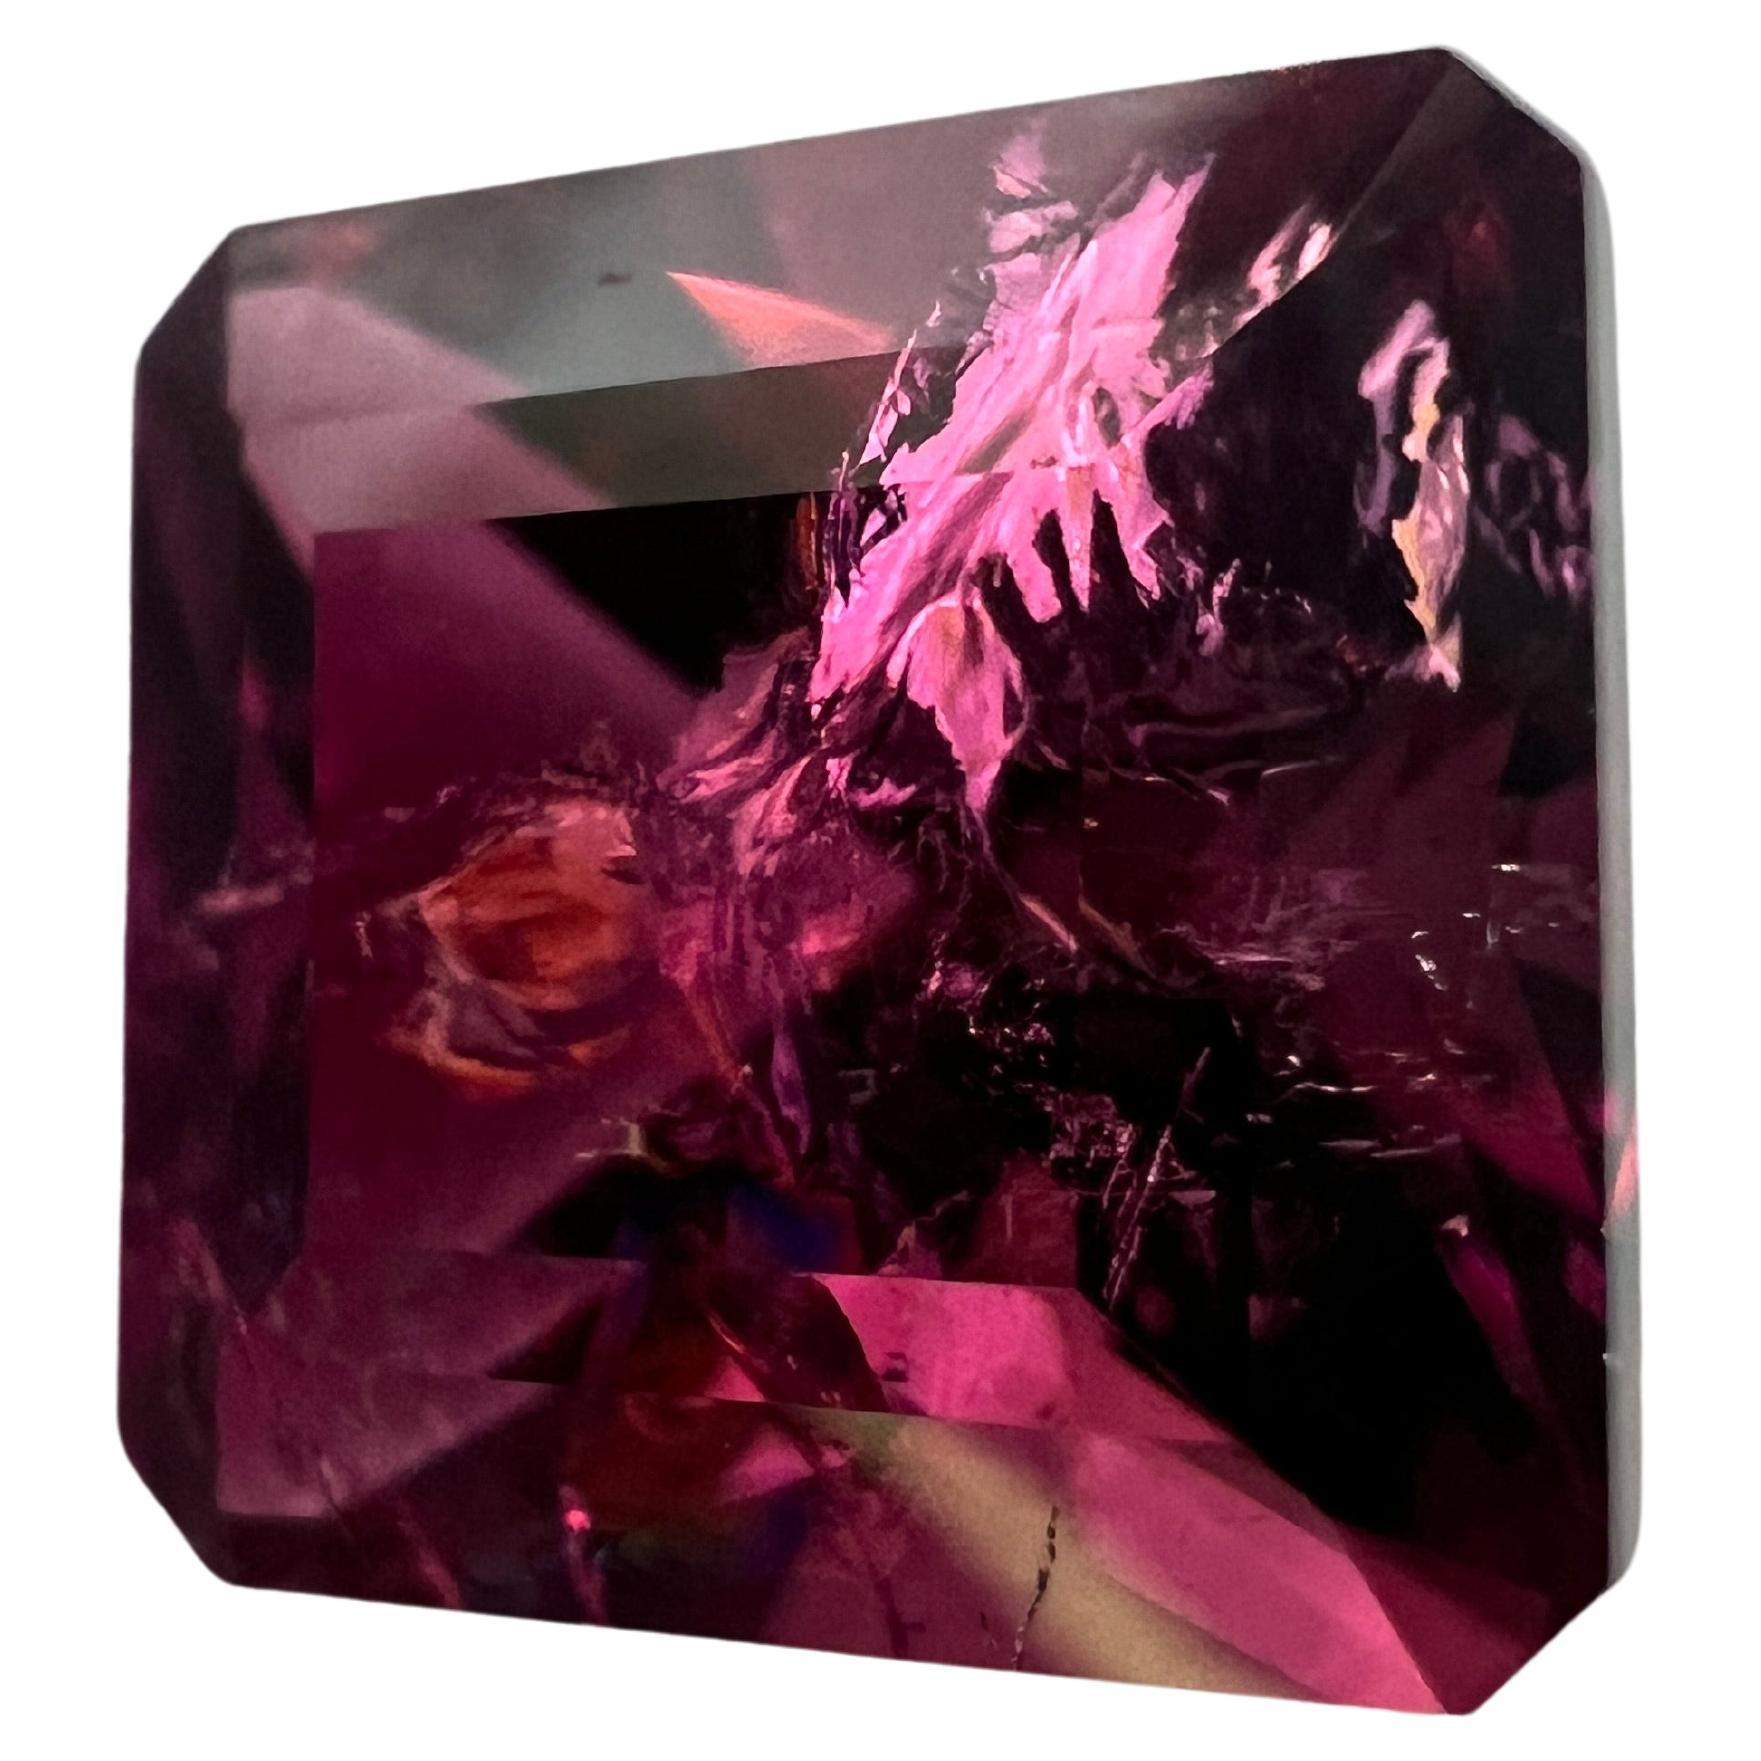 Notre Rubellite Asscher rose de 8,75ct est un trésor d'une beauté inégalée. Taillée dans le prestigieux style Asscher, cette pierre précieuse présente des facettes taillées en escalier qui attirent le regard vers l'intérieur, mettant en valeur la